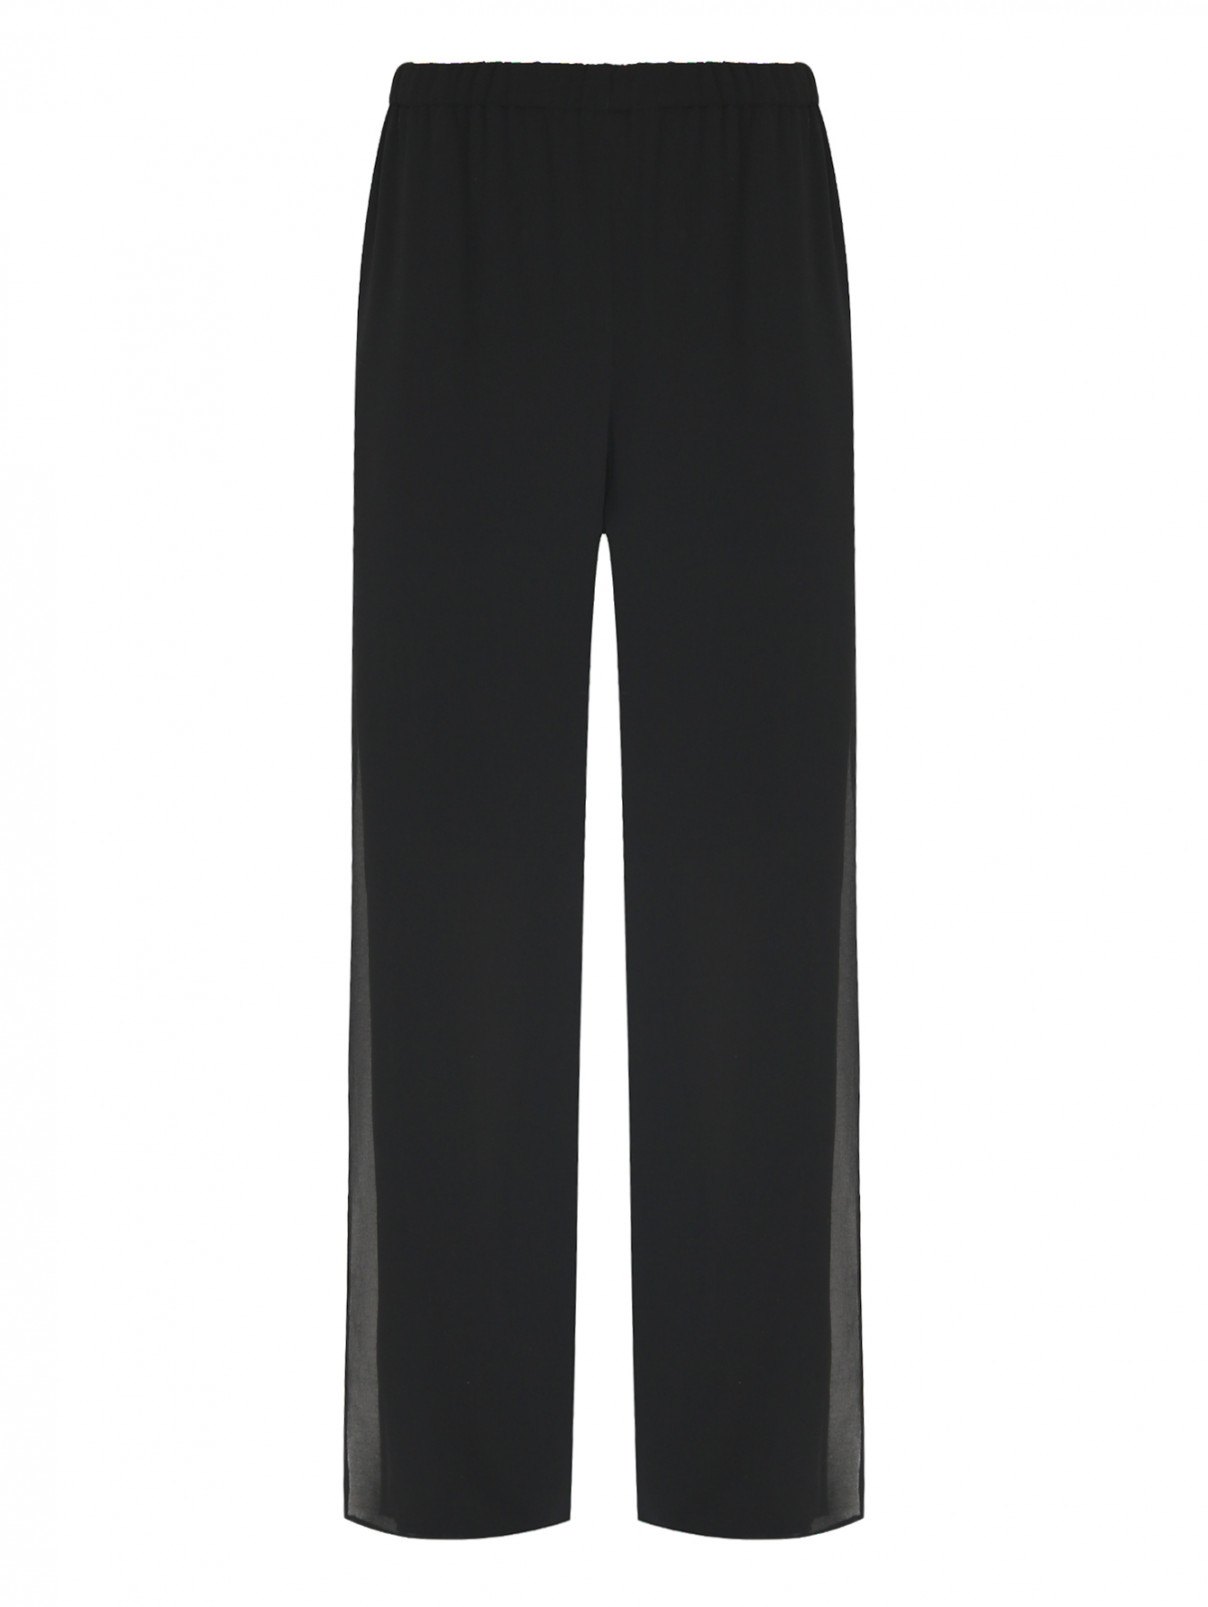 Свободные брюки на резинке Persona by Marina Rinaldi  –  Общий вид  – Цвет:  Черный